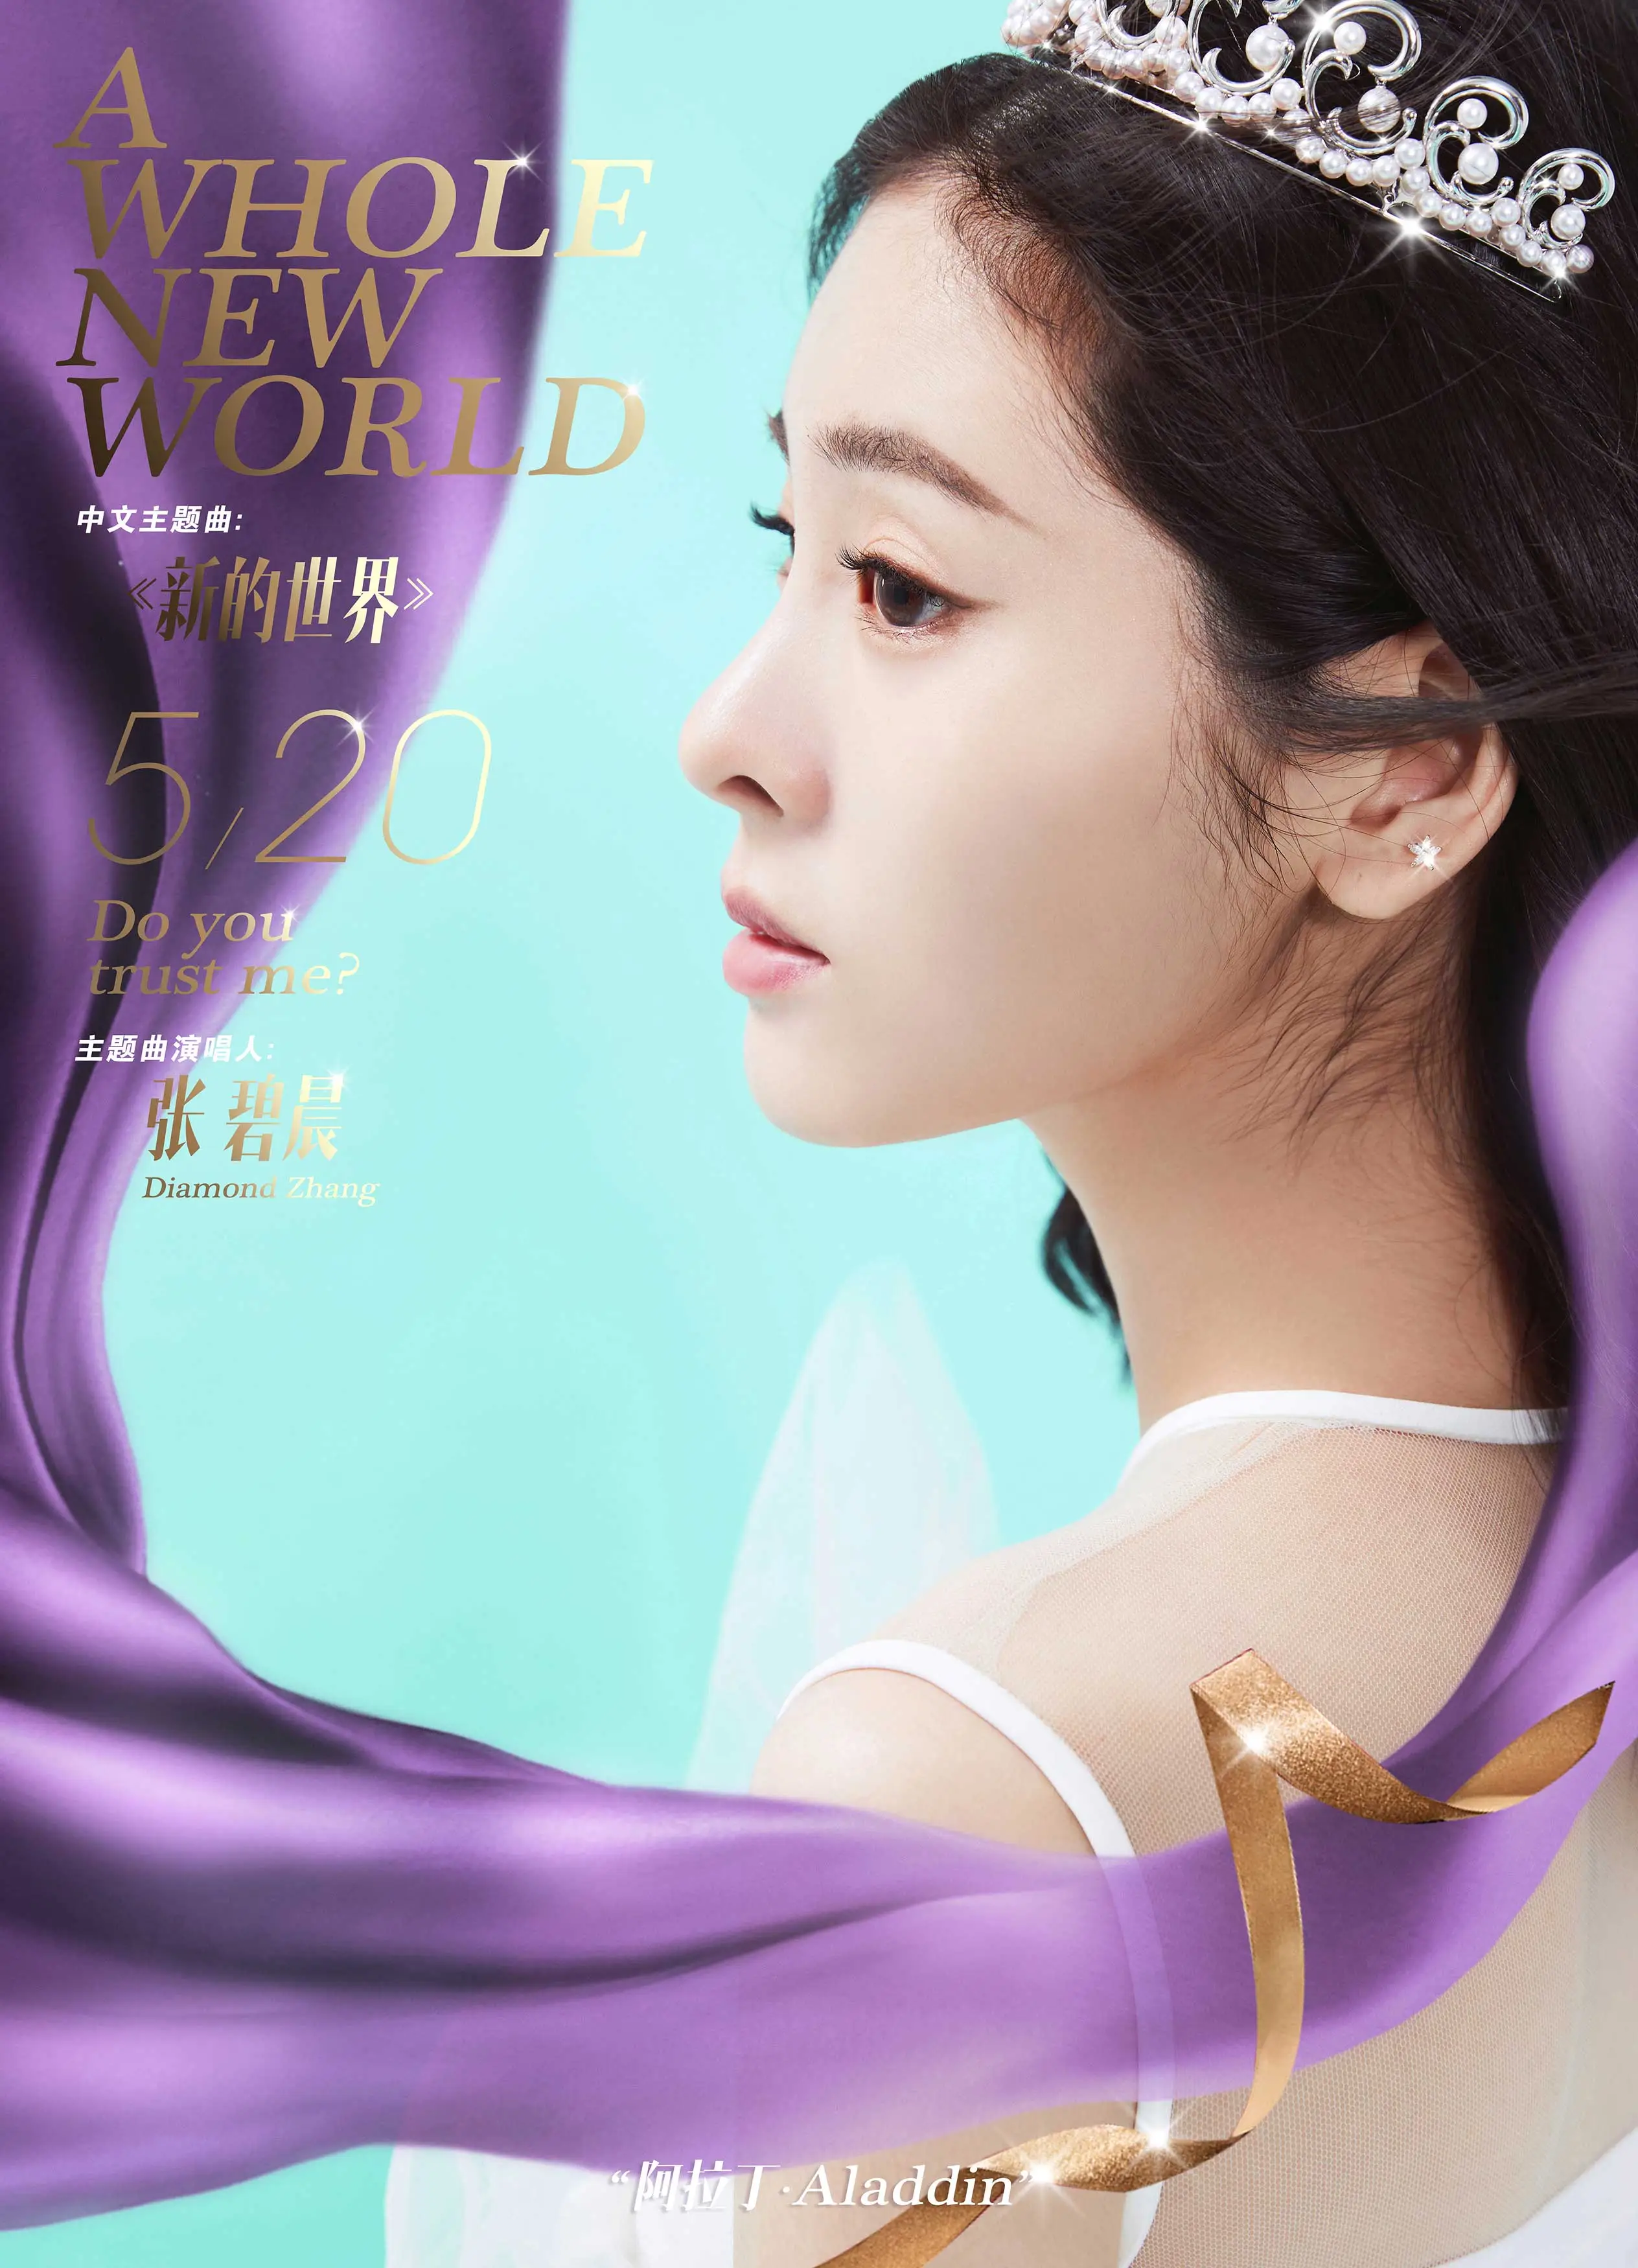  Diamond Zhang 演唱 Aladdin 中文主题曲《新的世界》.jpg